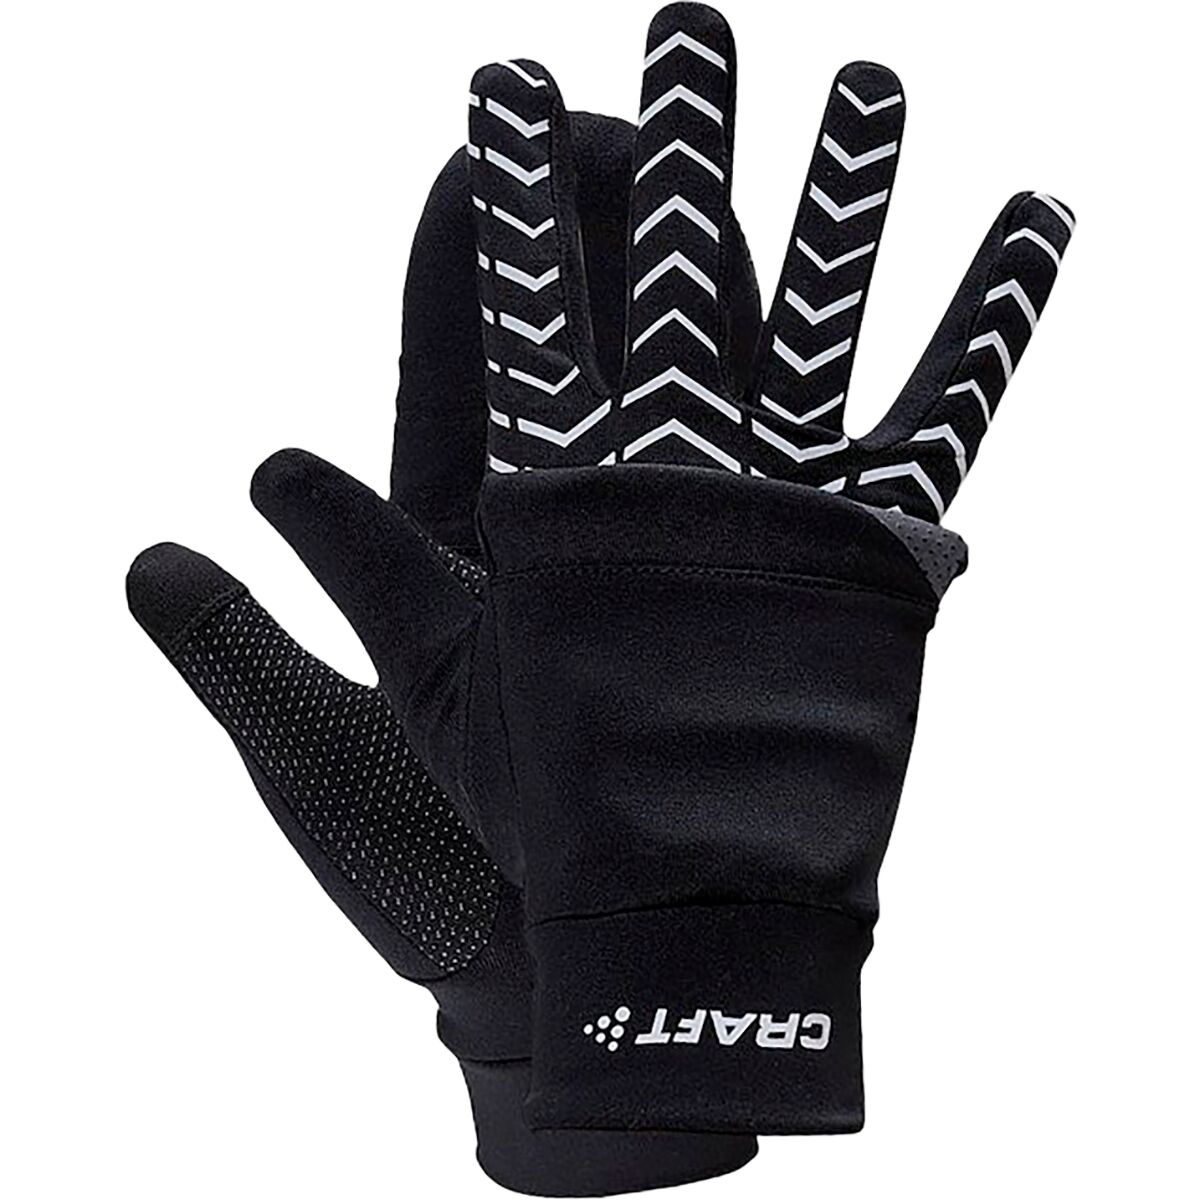 Craft Adv Lumen Hybrid Glove - Men's